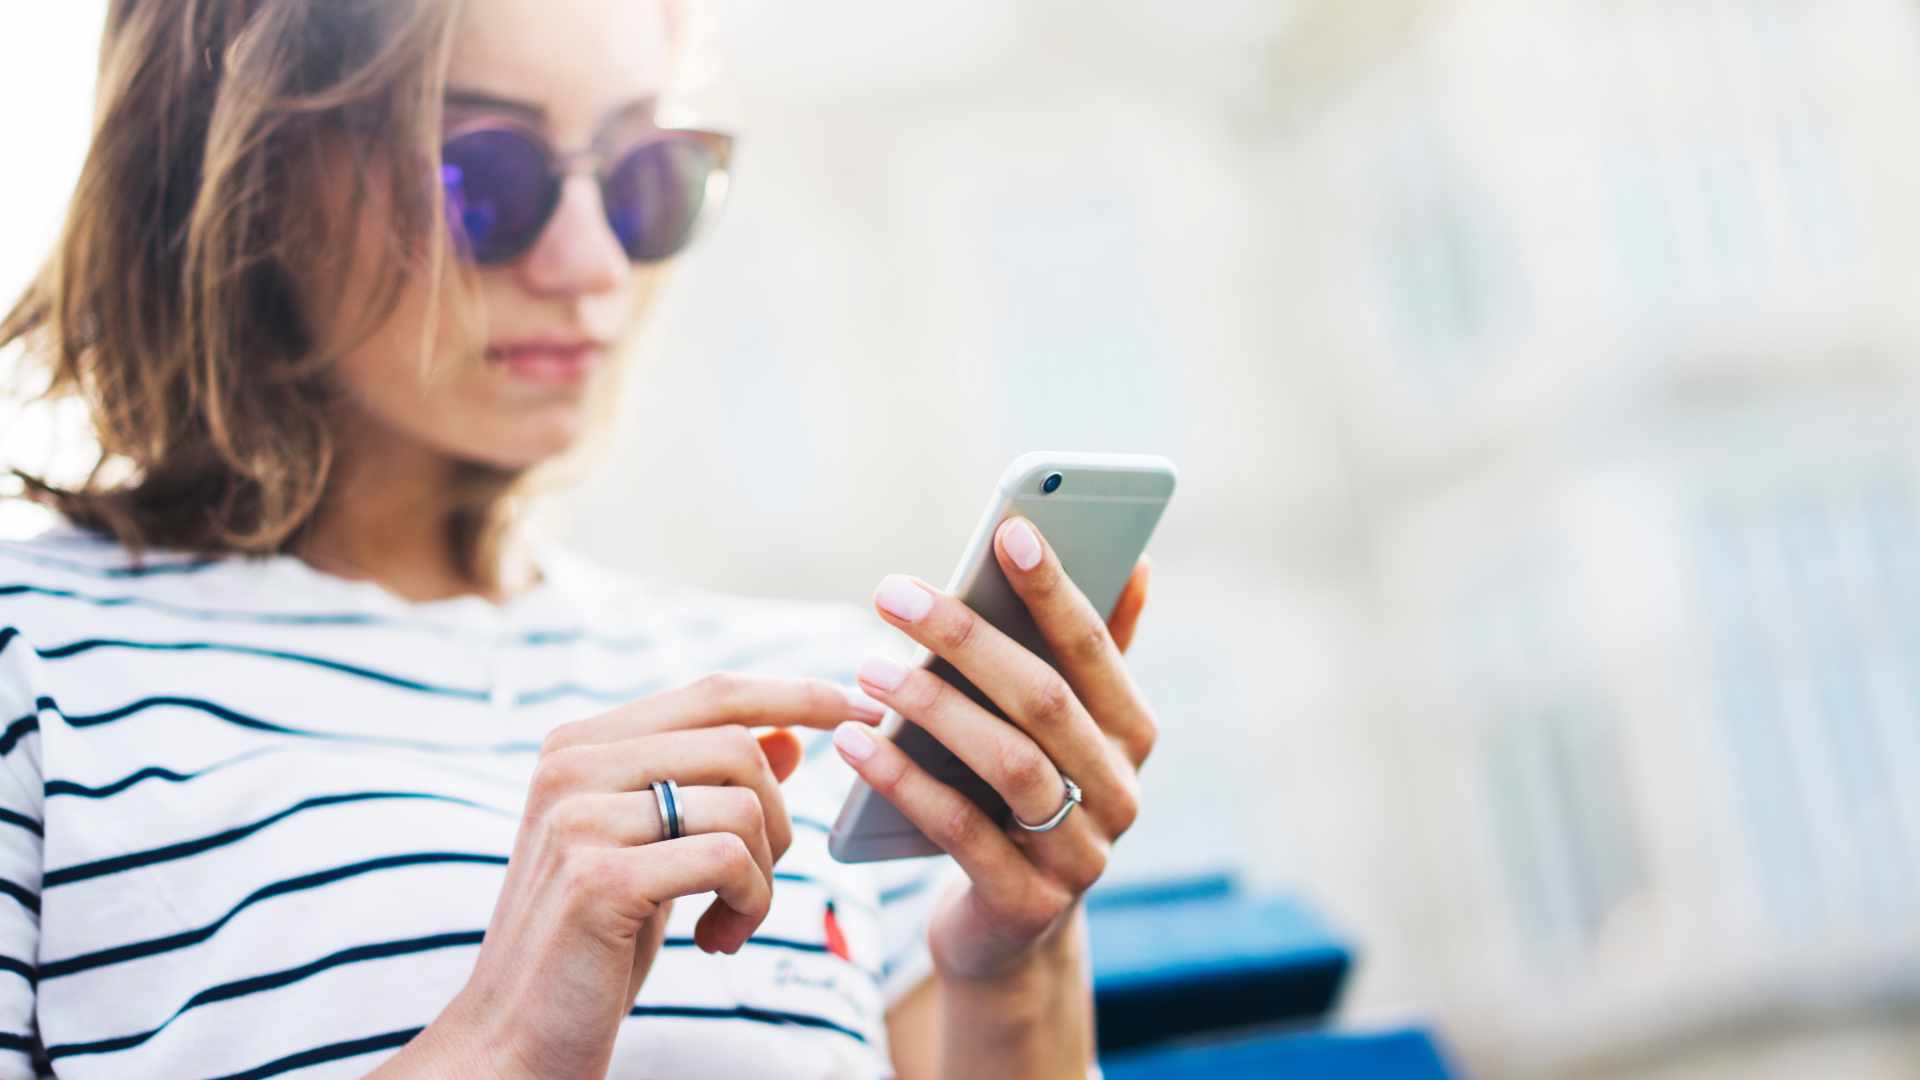 Les SMS modernes assurent aux clients et aux entreprises une connexion continue sans faute